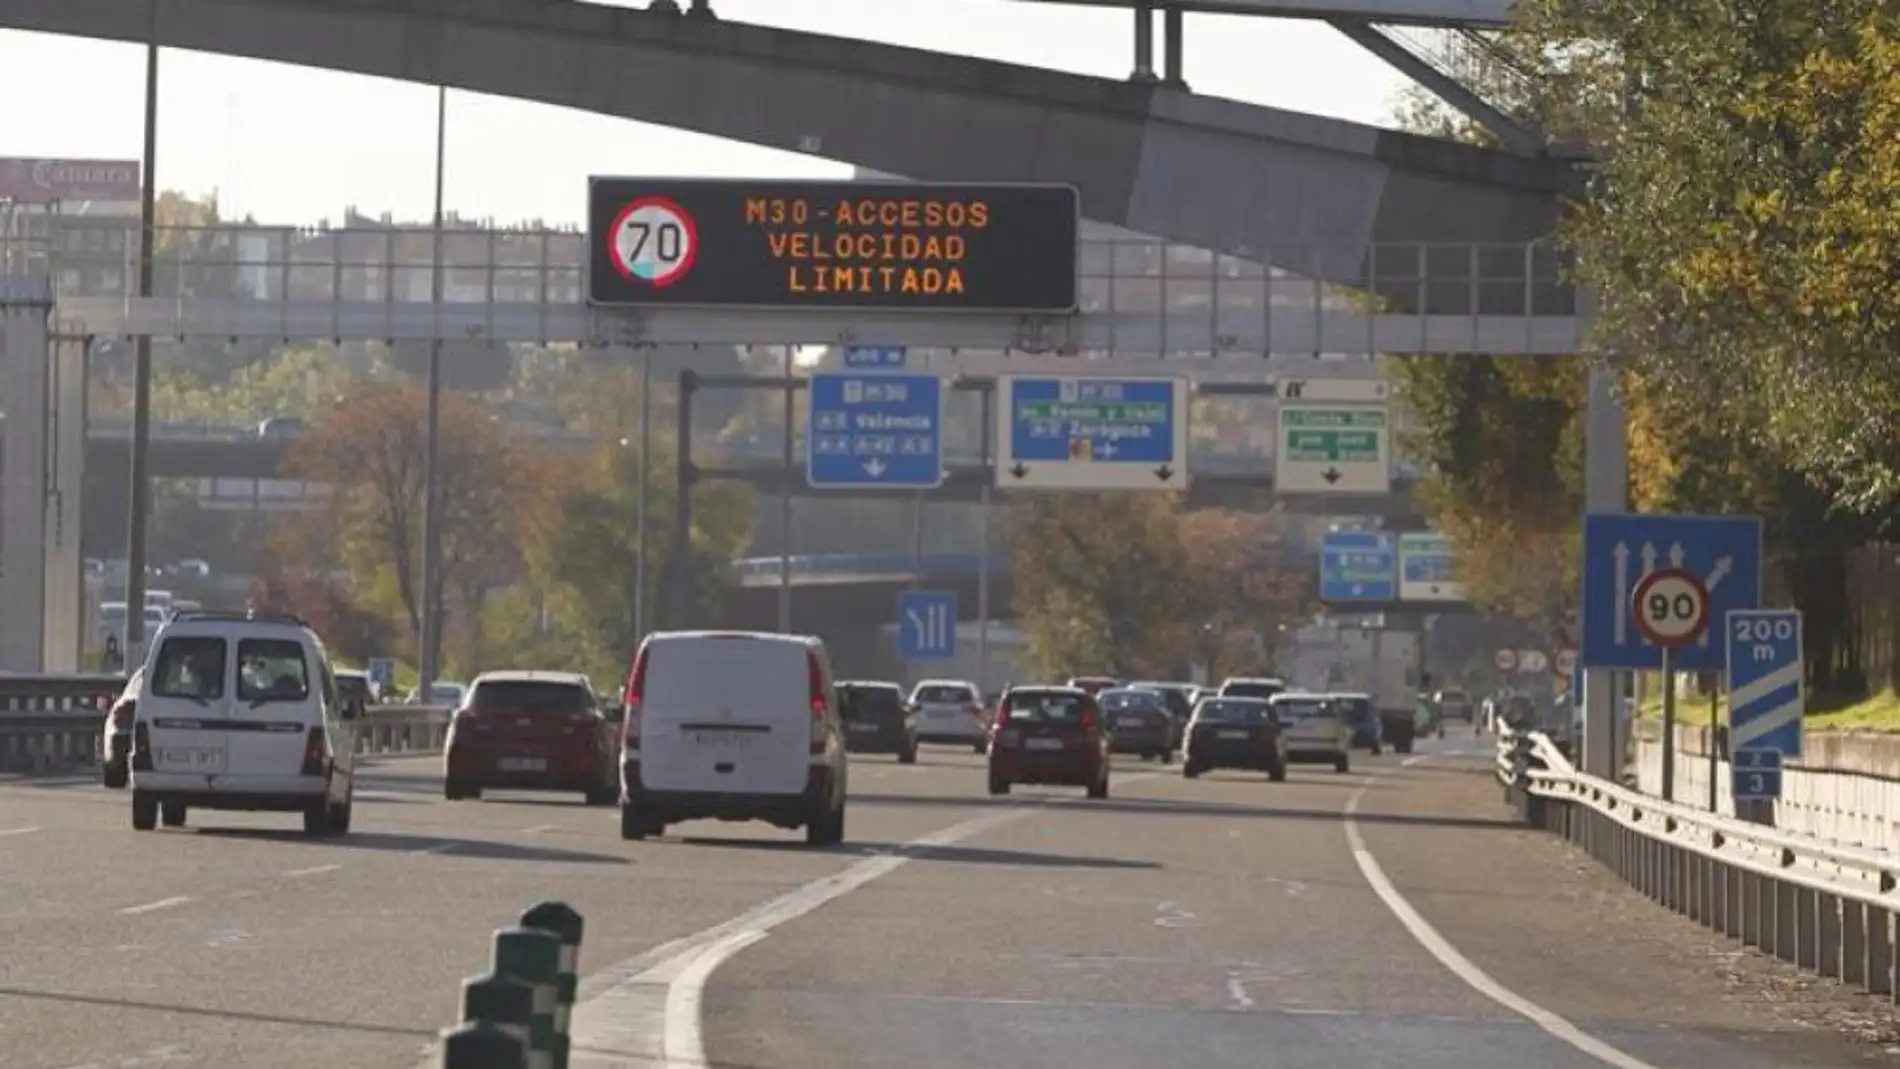 La UE aprueba la norma "Euro 7" para reducir las emisiones de los coches